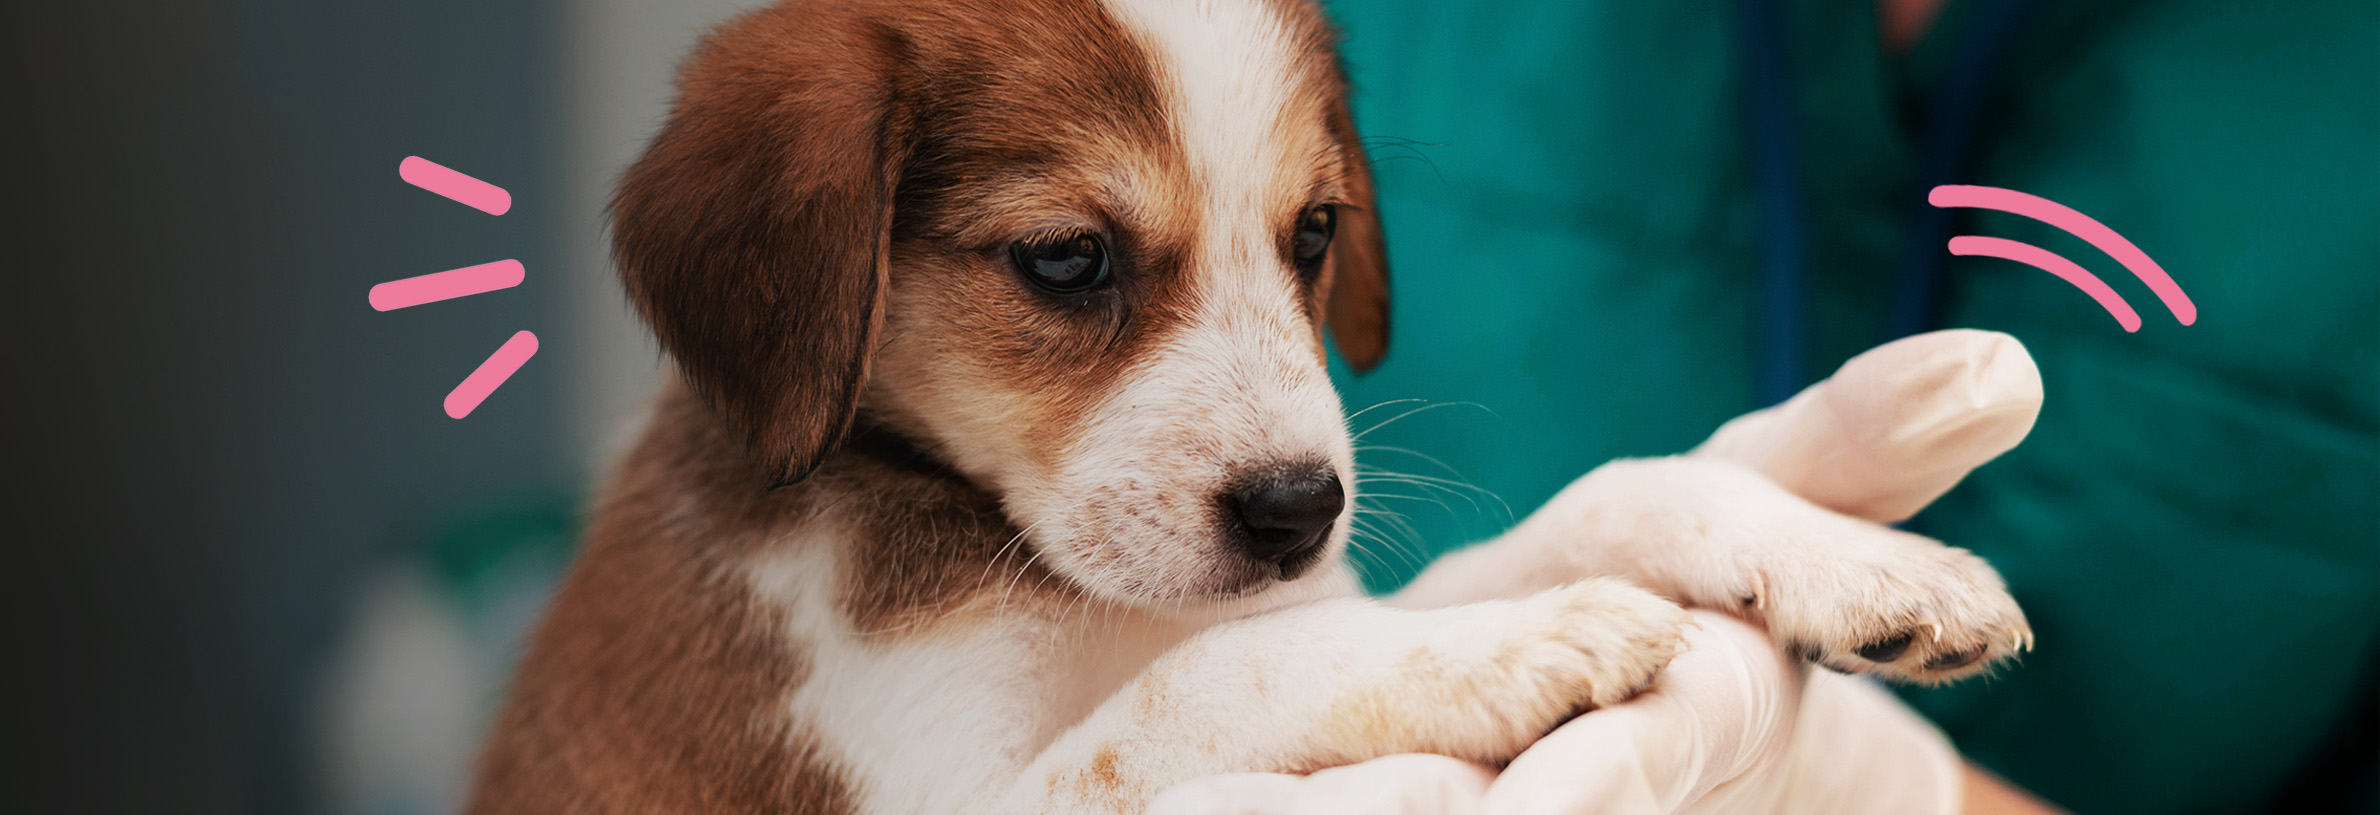 Hondenbaasje krijgt dierenartsrekening van €2.270,45